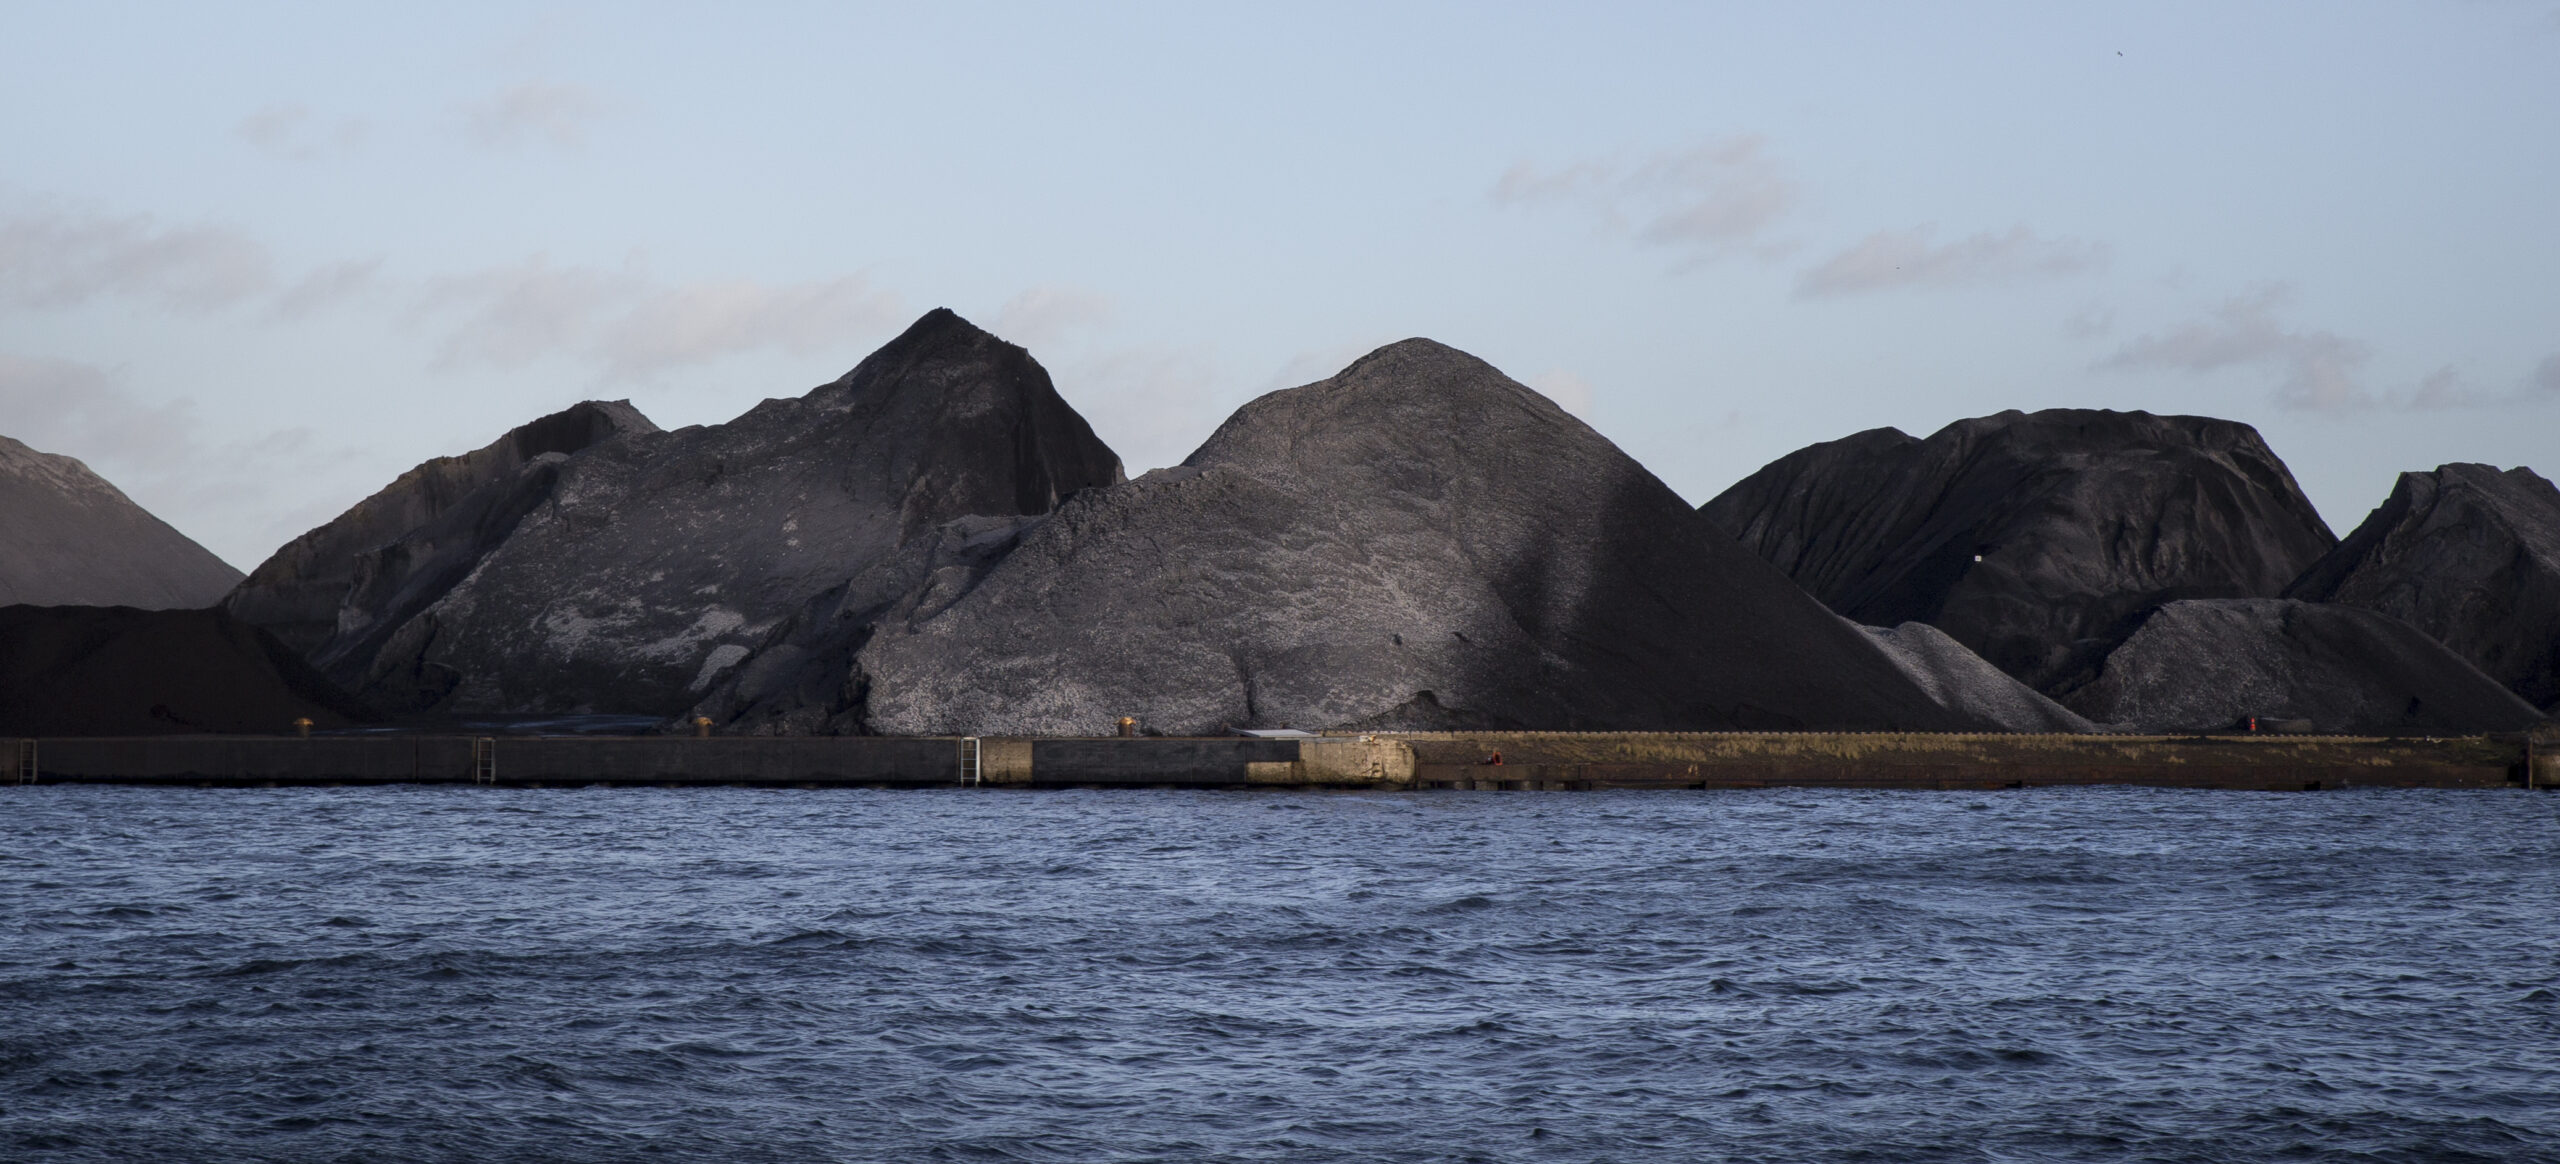 Piles of coal next to a shoreline